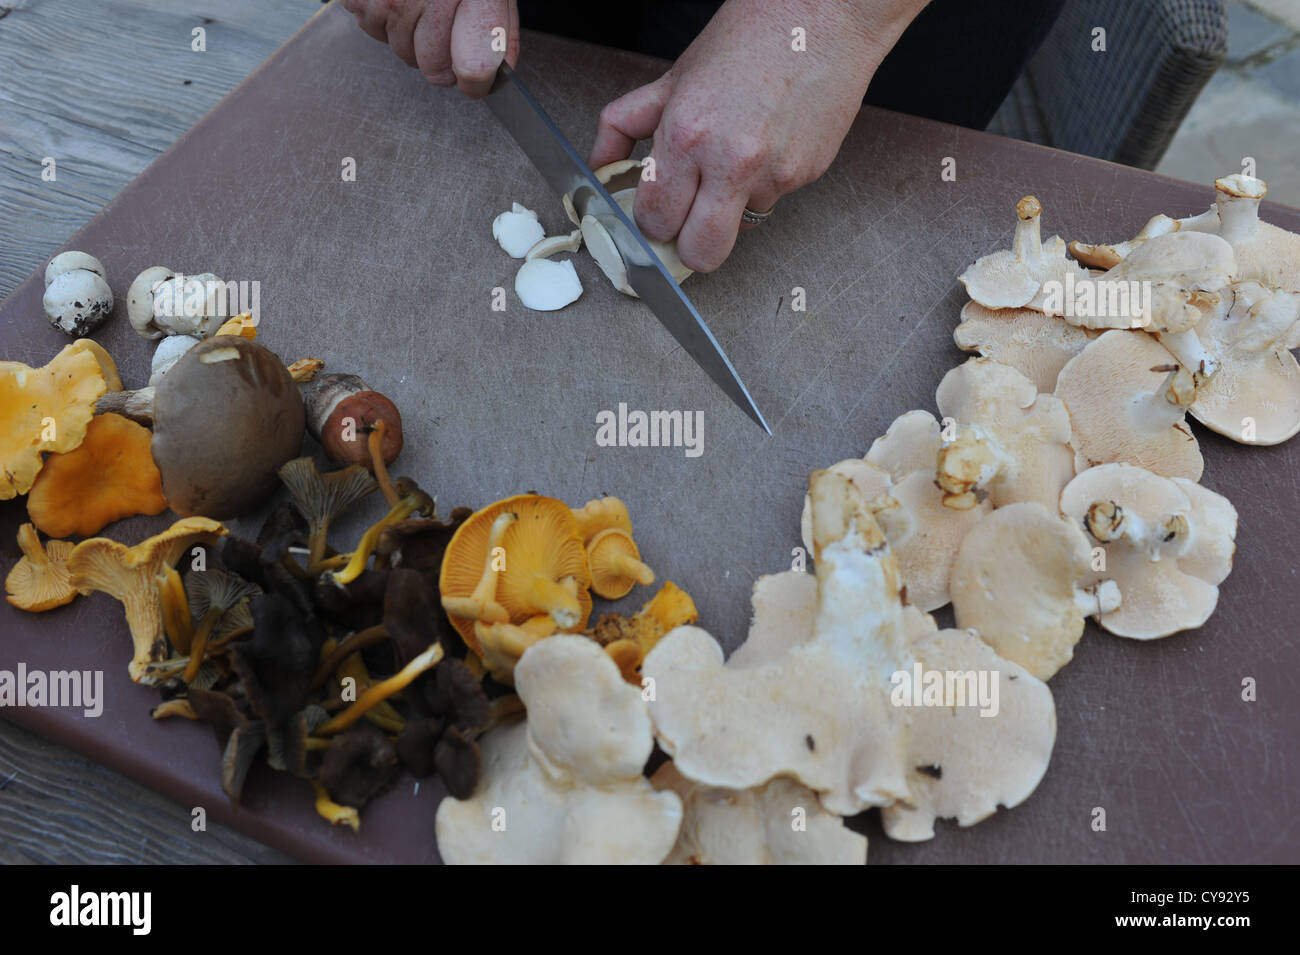 Gesammelten Pilze und anderen wilden Wald-Produkten Stockfoto